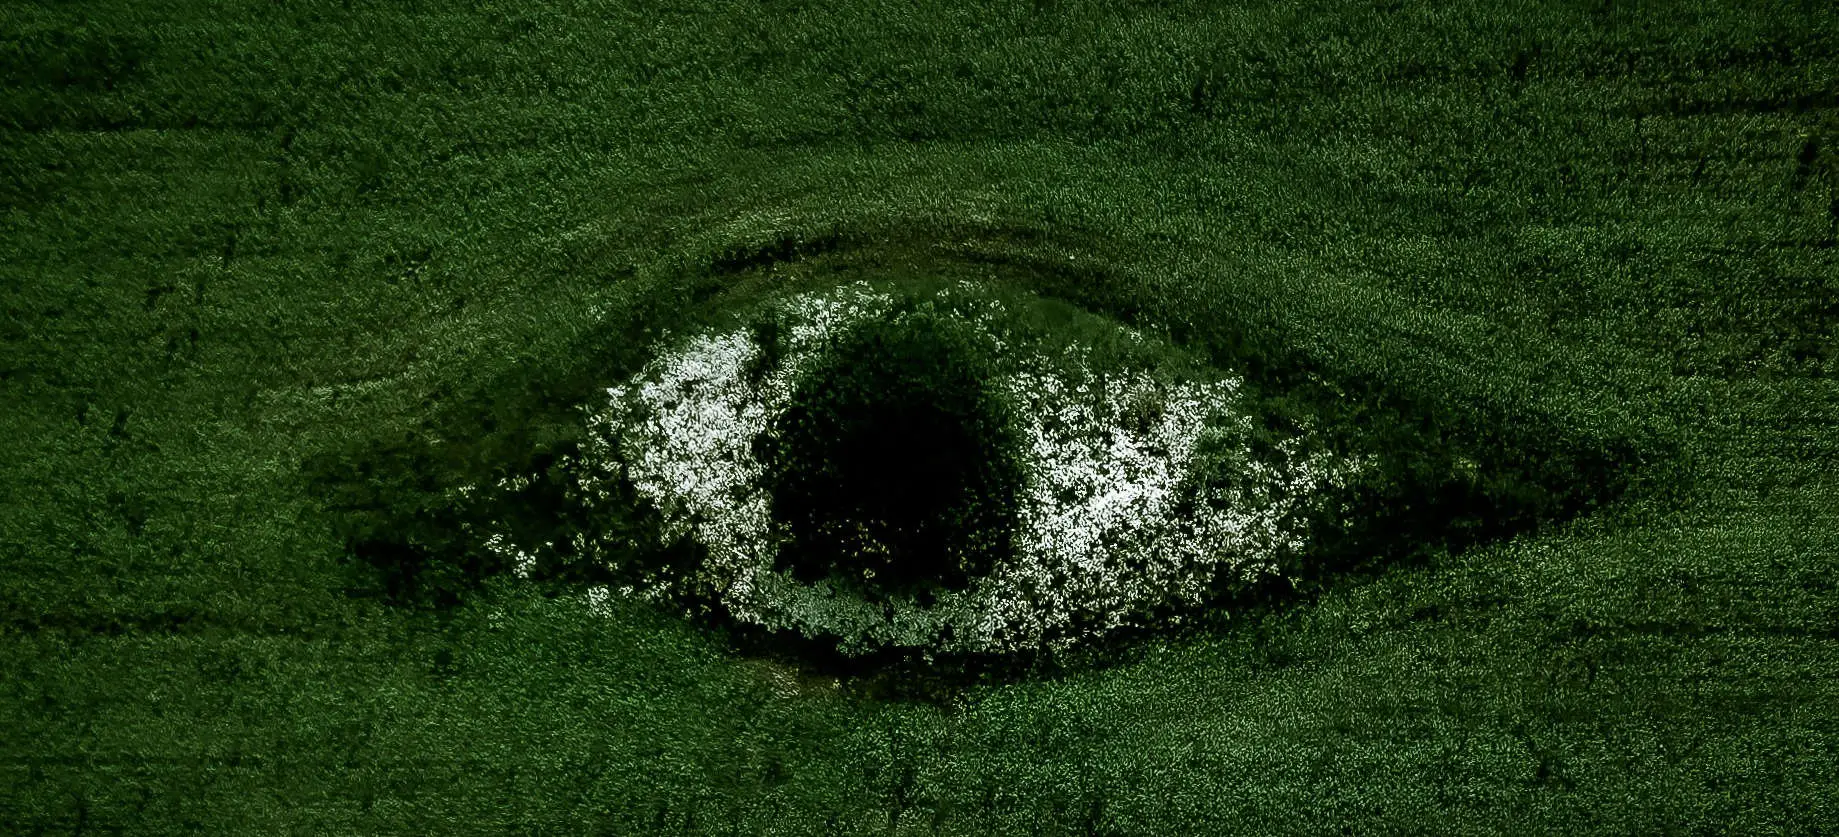 aerial view of eye shaped break in green field